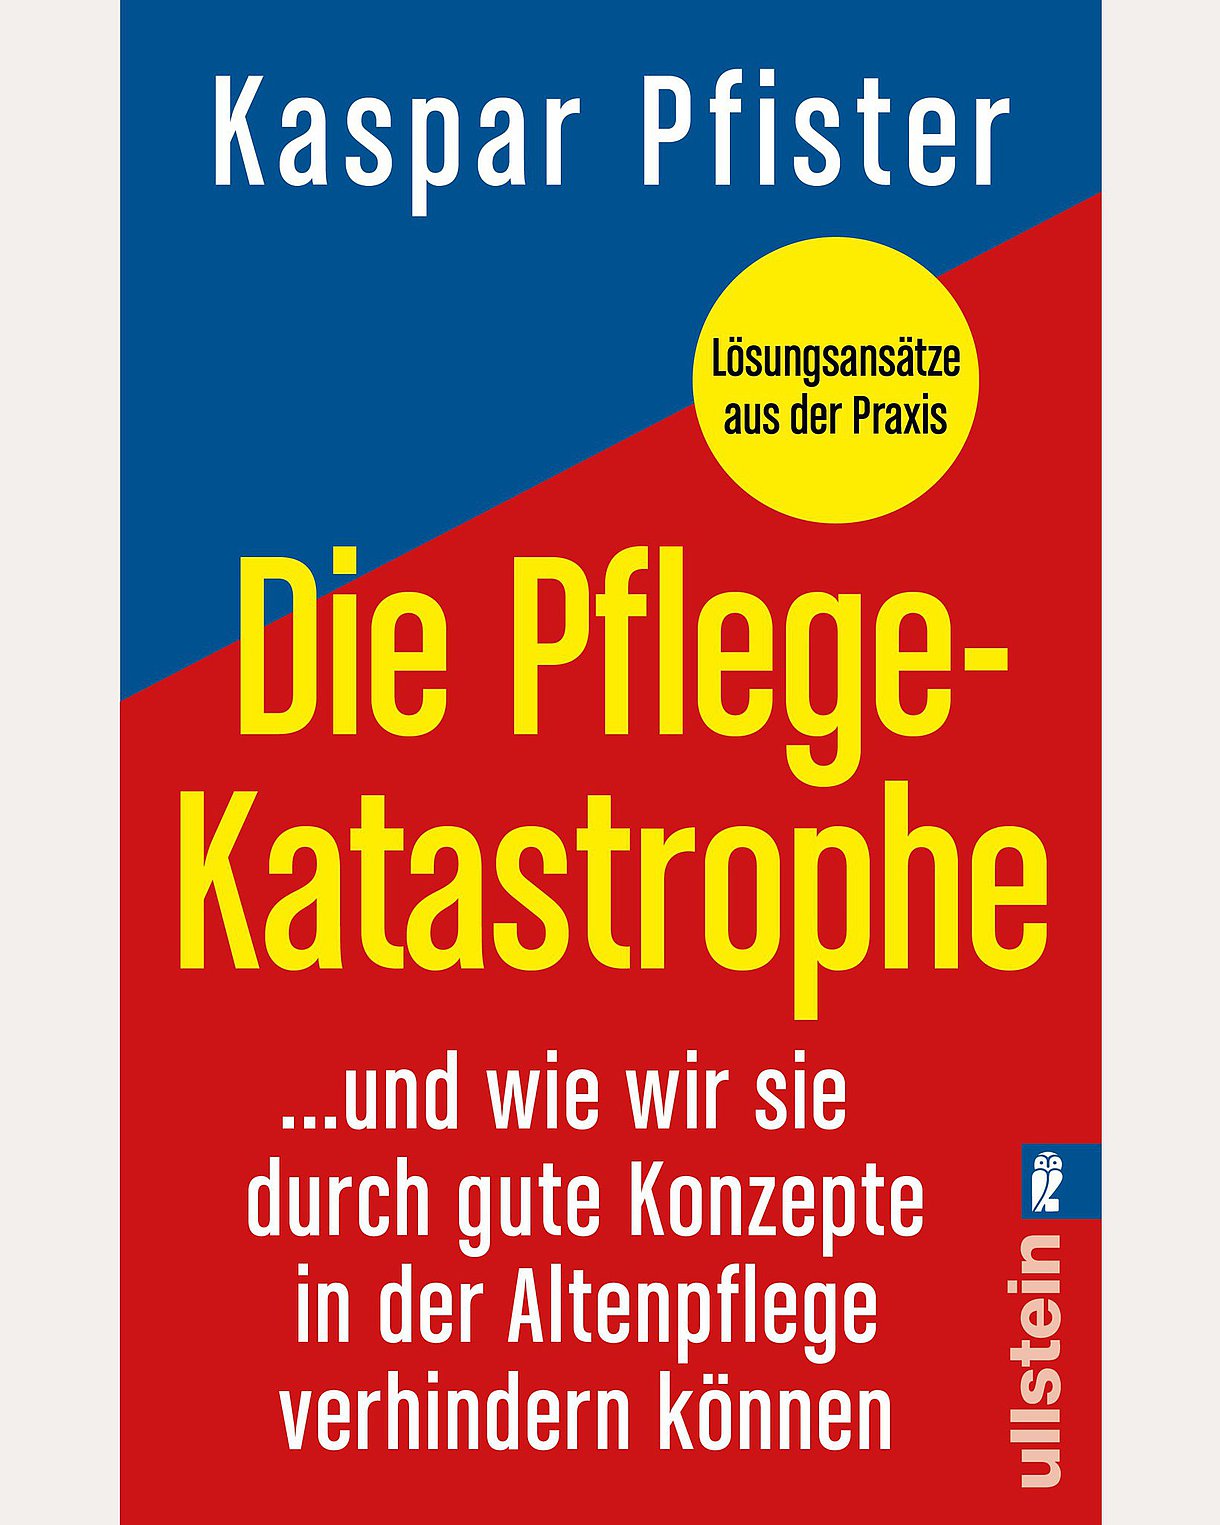 Cover des Buches "Die Pflegekata­strophe" in den Farben Rot und Blau